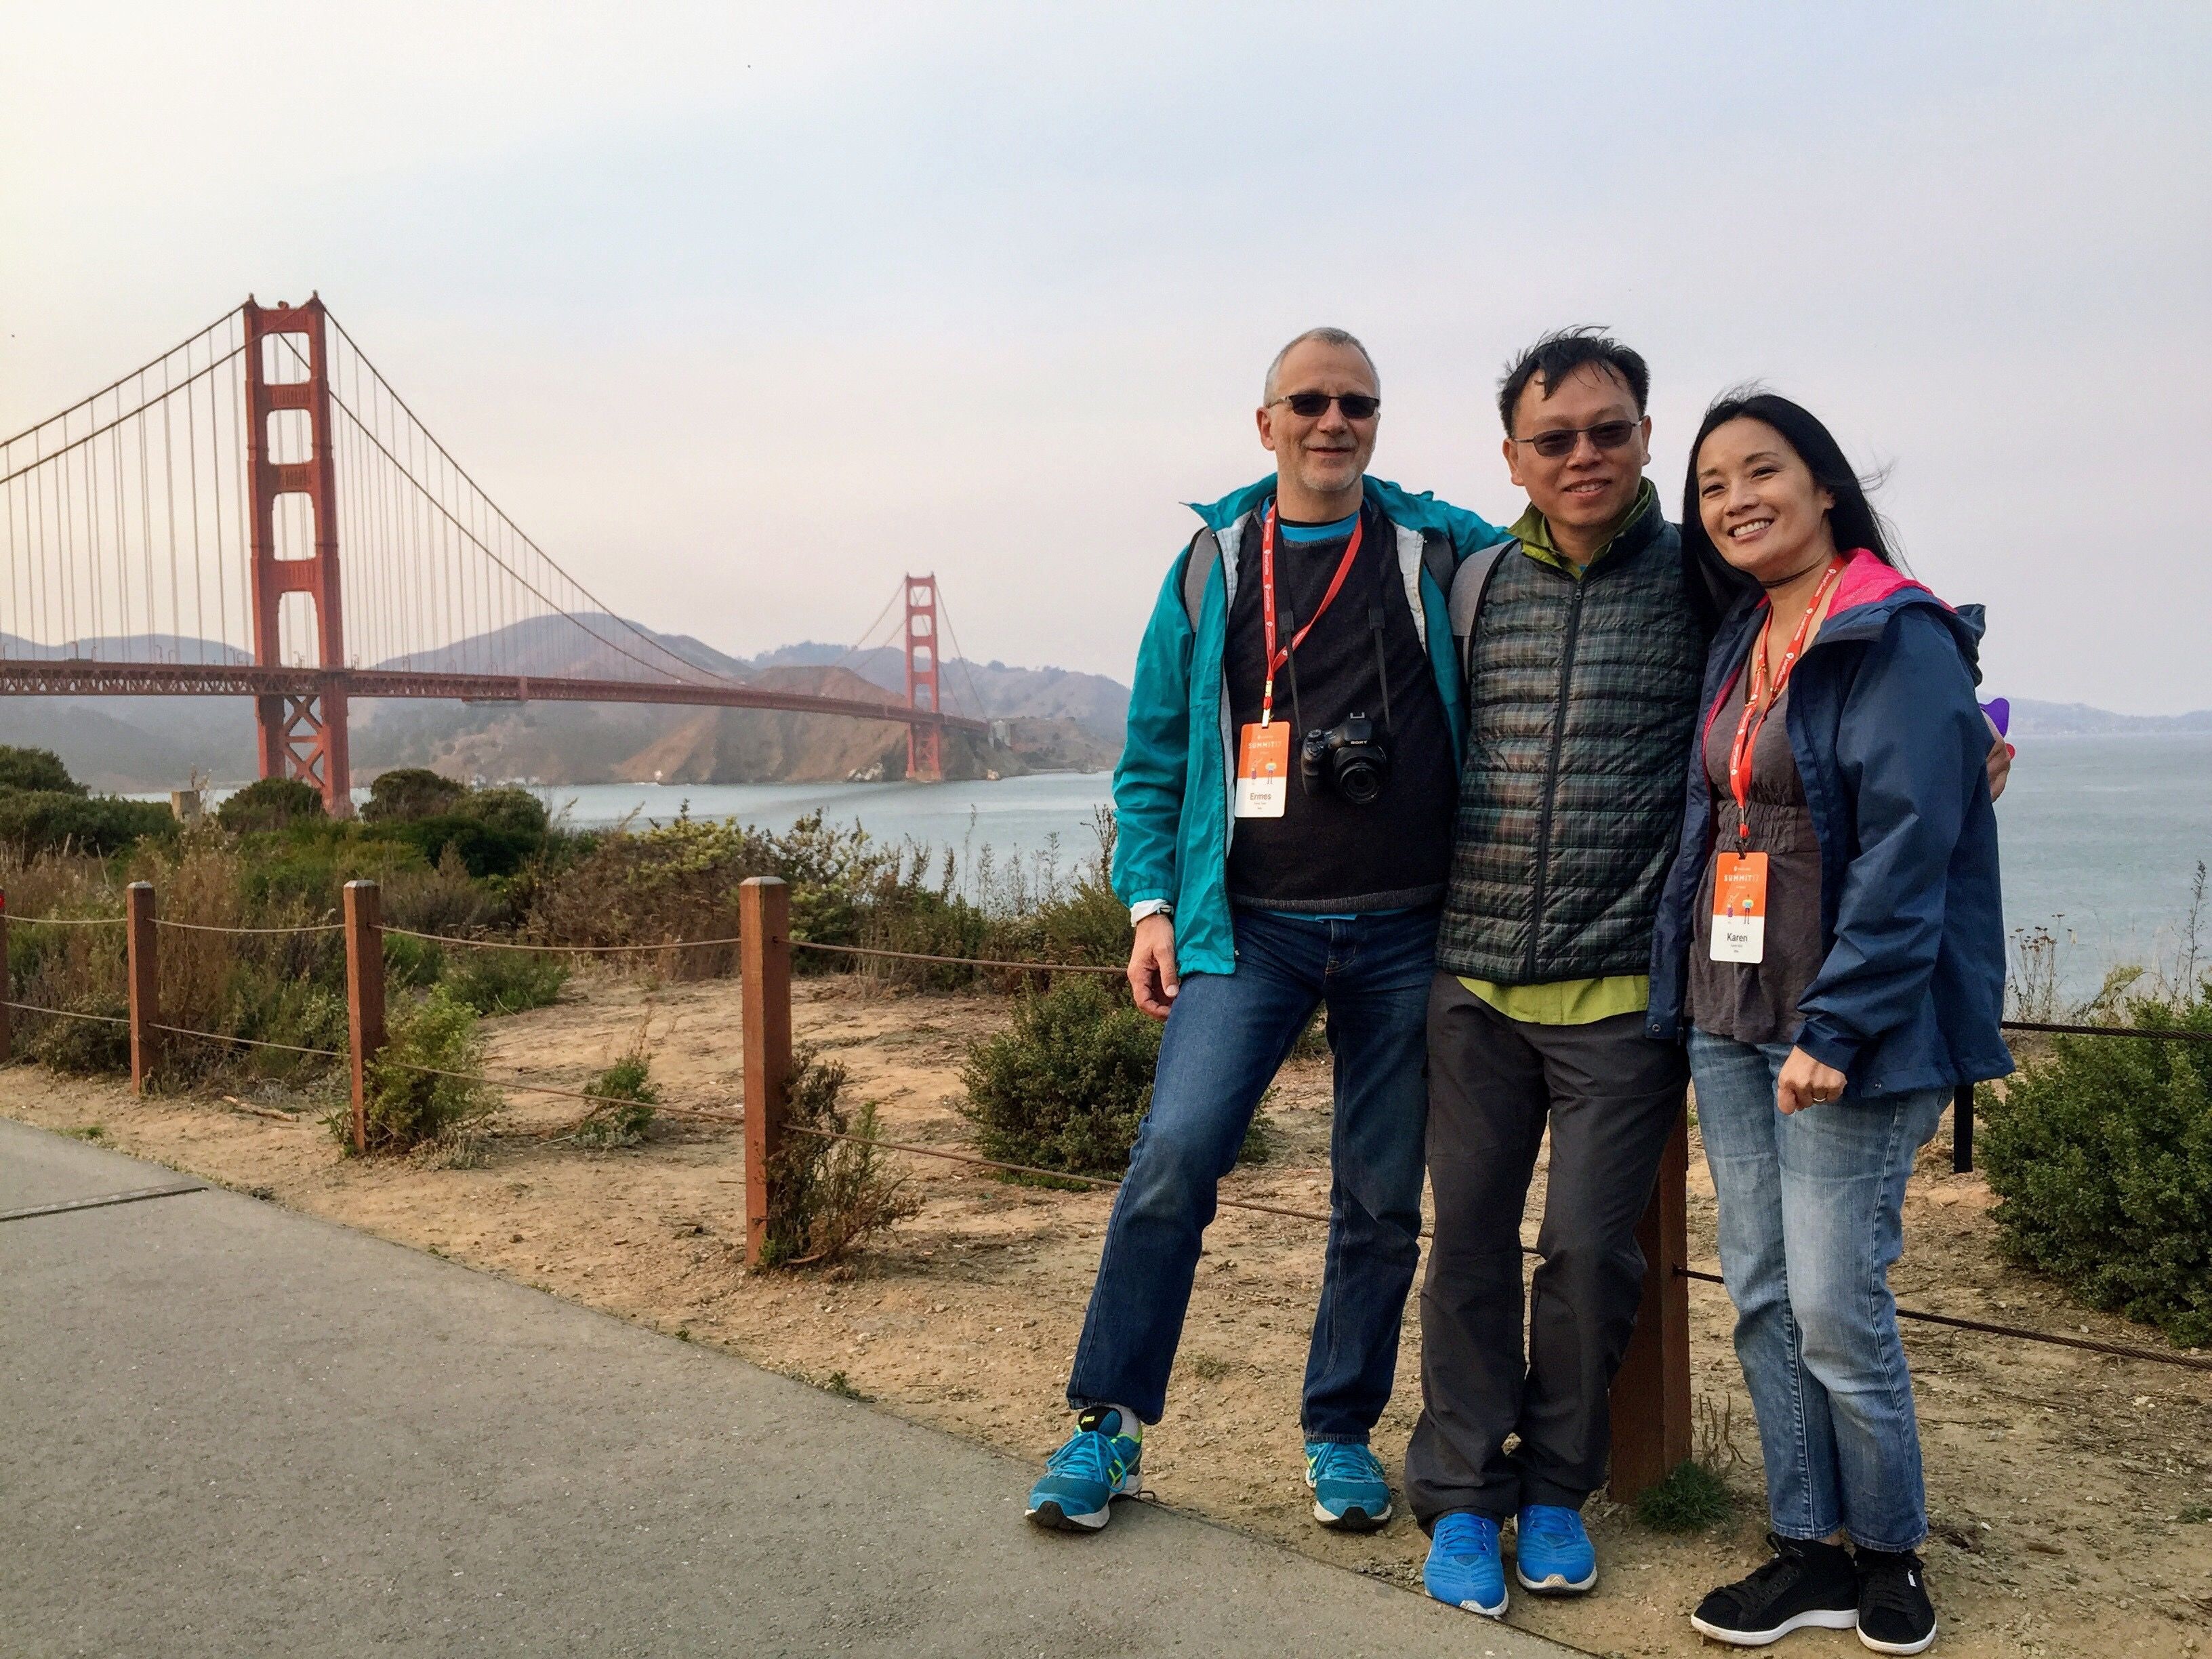 Caption: The Three Amigos take on the Golden Gate Bridge. LGSummit17.  Photo: @KarenVChin